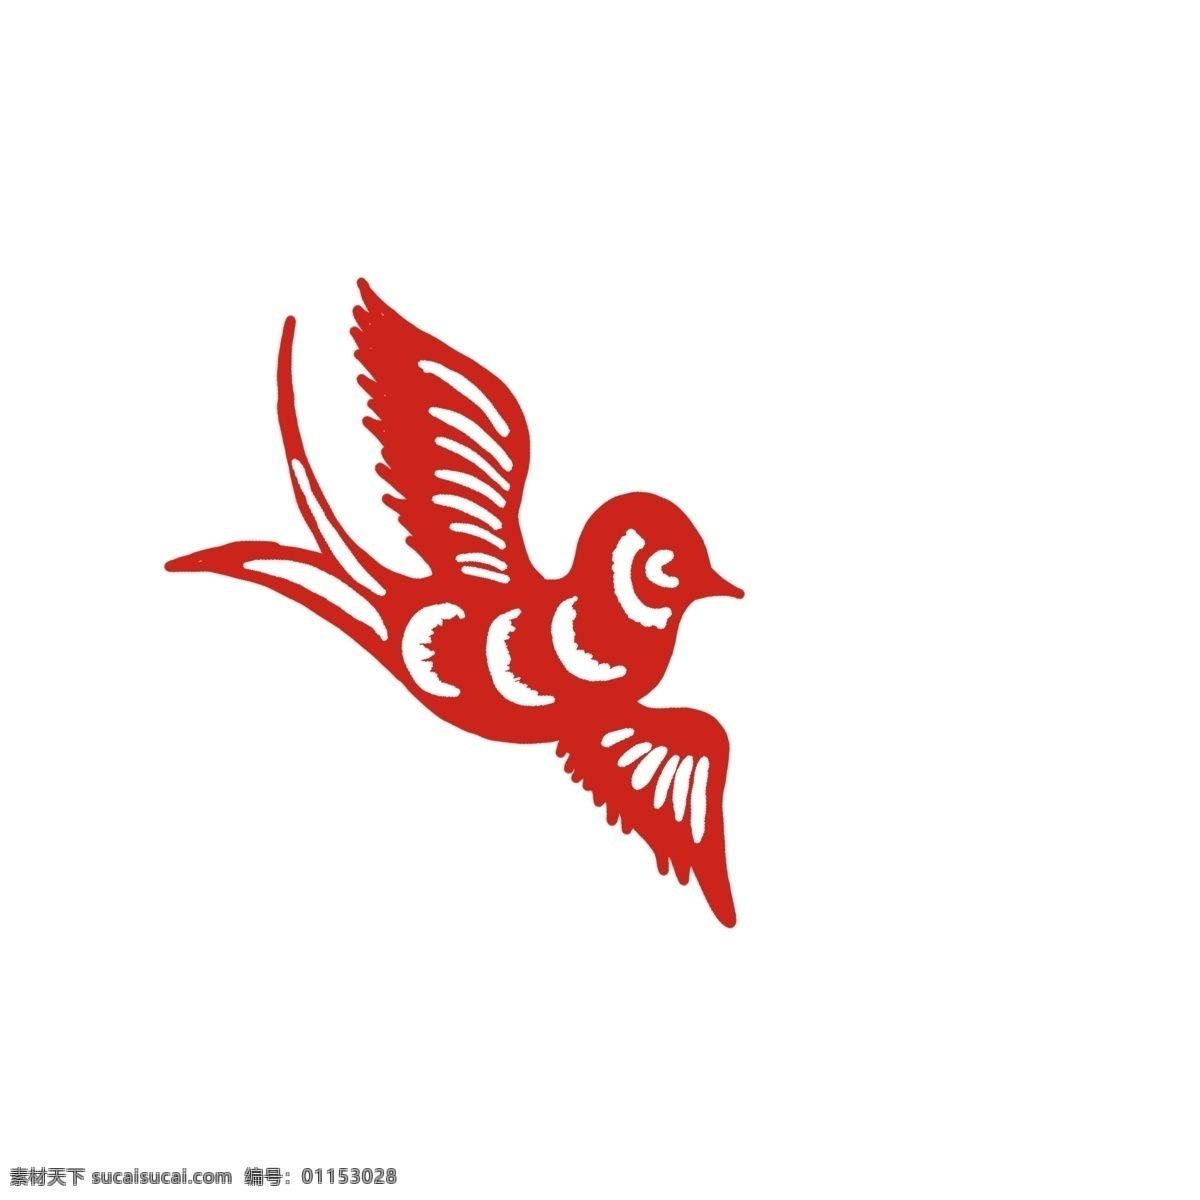 红色 手绘 中国 风 燕子 元素 中国风 浪花 卡通 简约 简约燕子 卡通燕子 手绘燕子 简单 红色卡通